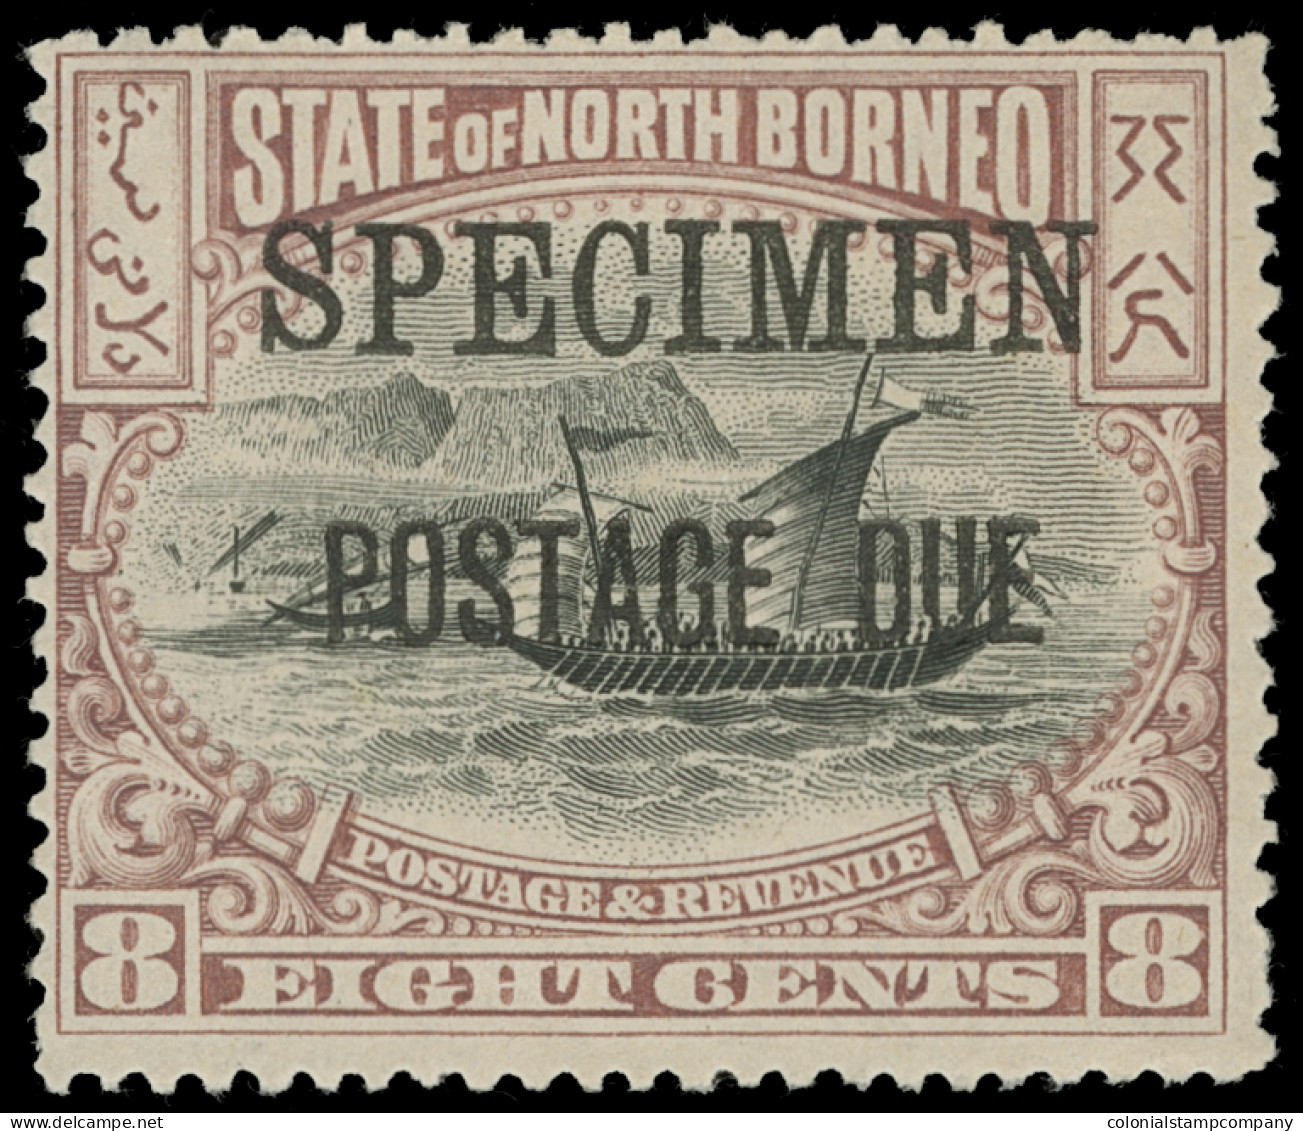 S North Borneo - Lot No. 1253 - Bornéo Du Nord (...-1963)